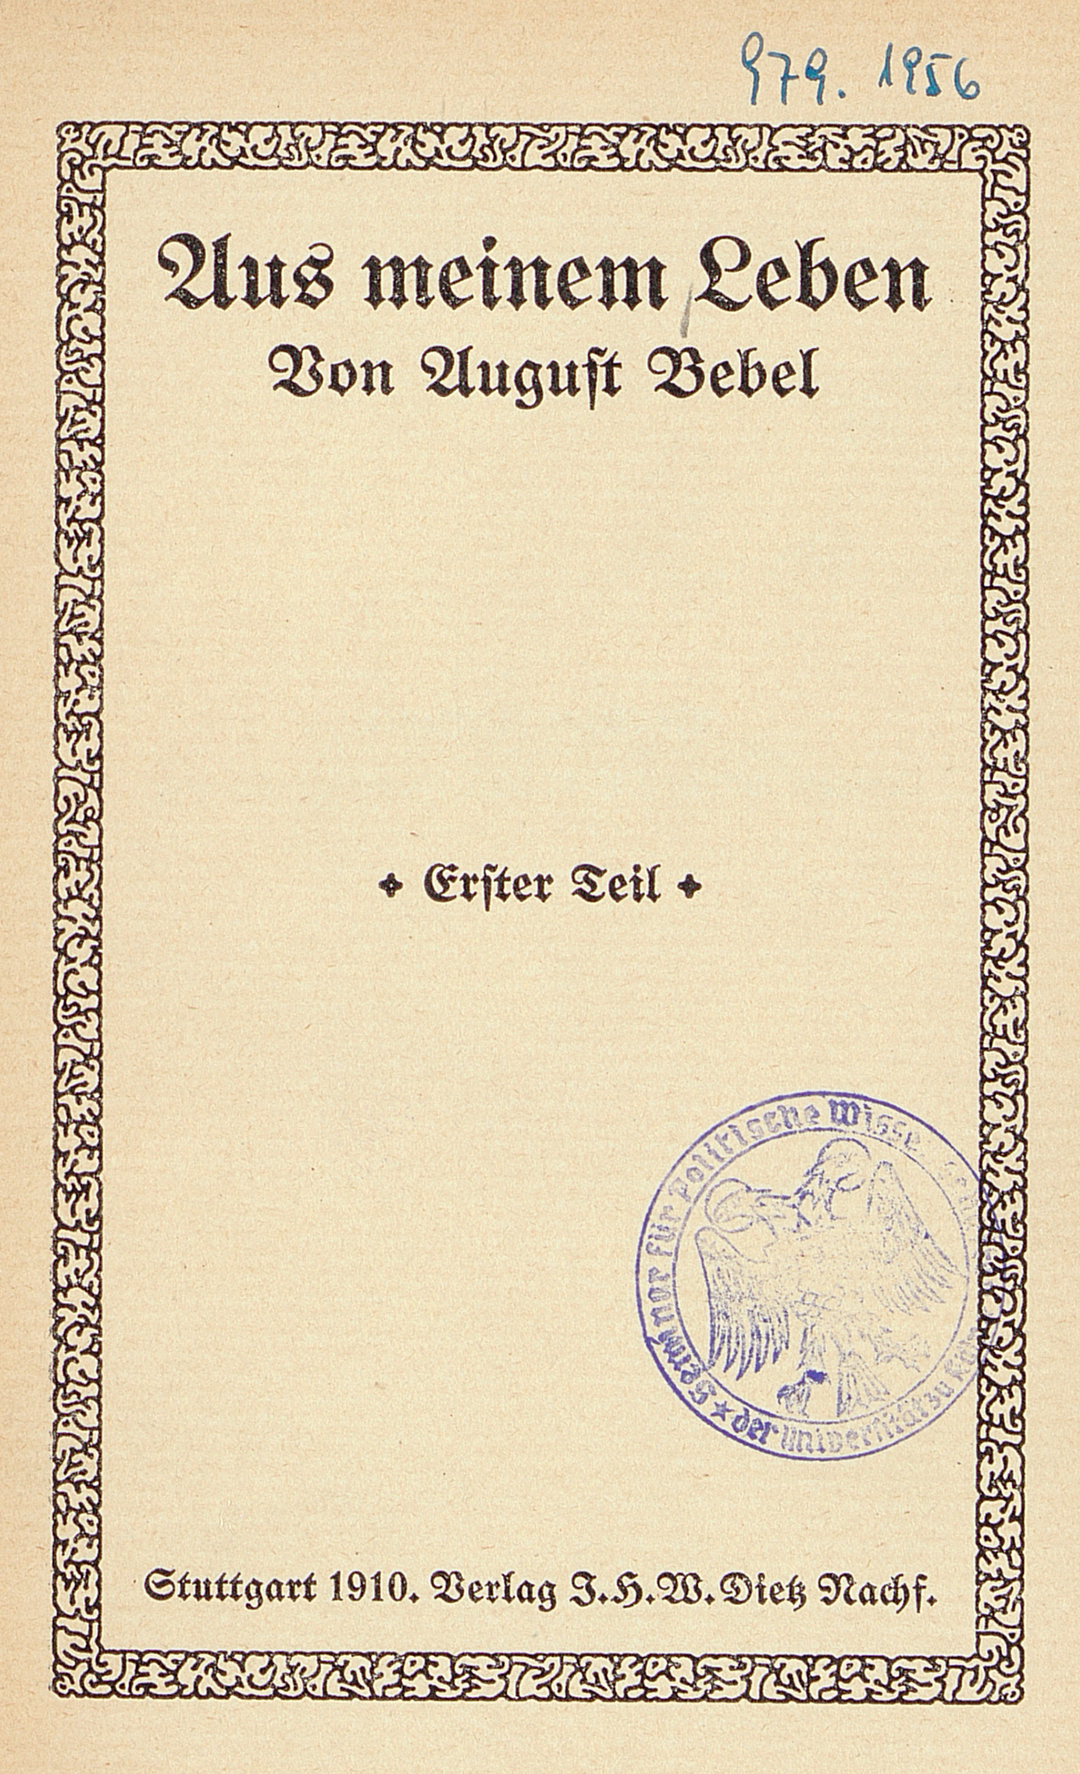 Das Frontblatt einer Widmung von August Bebel mit dem Titel "Aus meinem Leben" herausgegeben in Stuttgart im Jahre 1910.